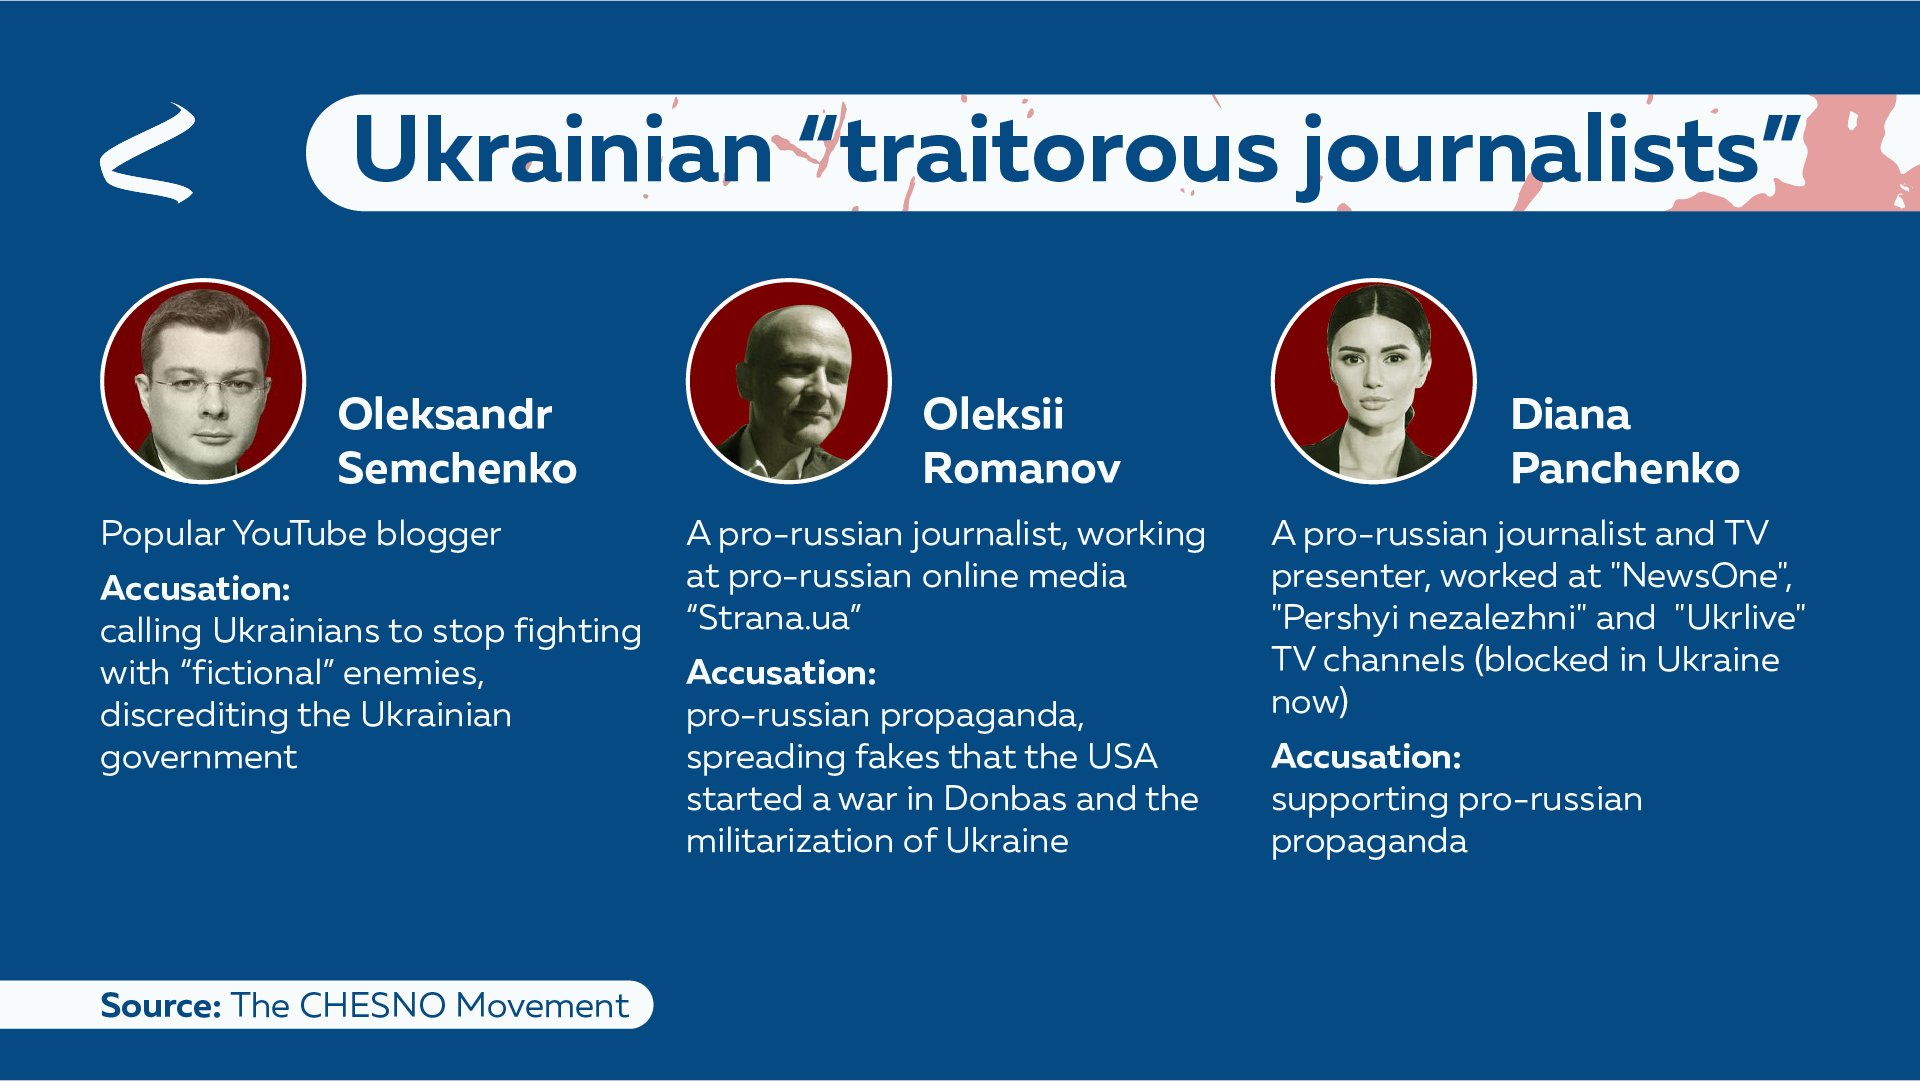 Periodistas ucranianos acusados de colaborar con los invasores rusos en un posteo realizado por el denominado Movimiento Chesno que lucha contra la corrupción en Ucrania (Telegram)